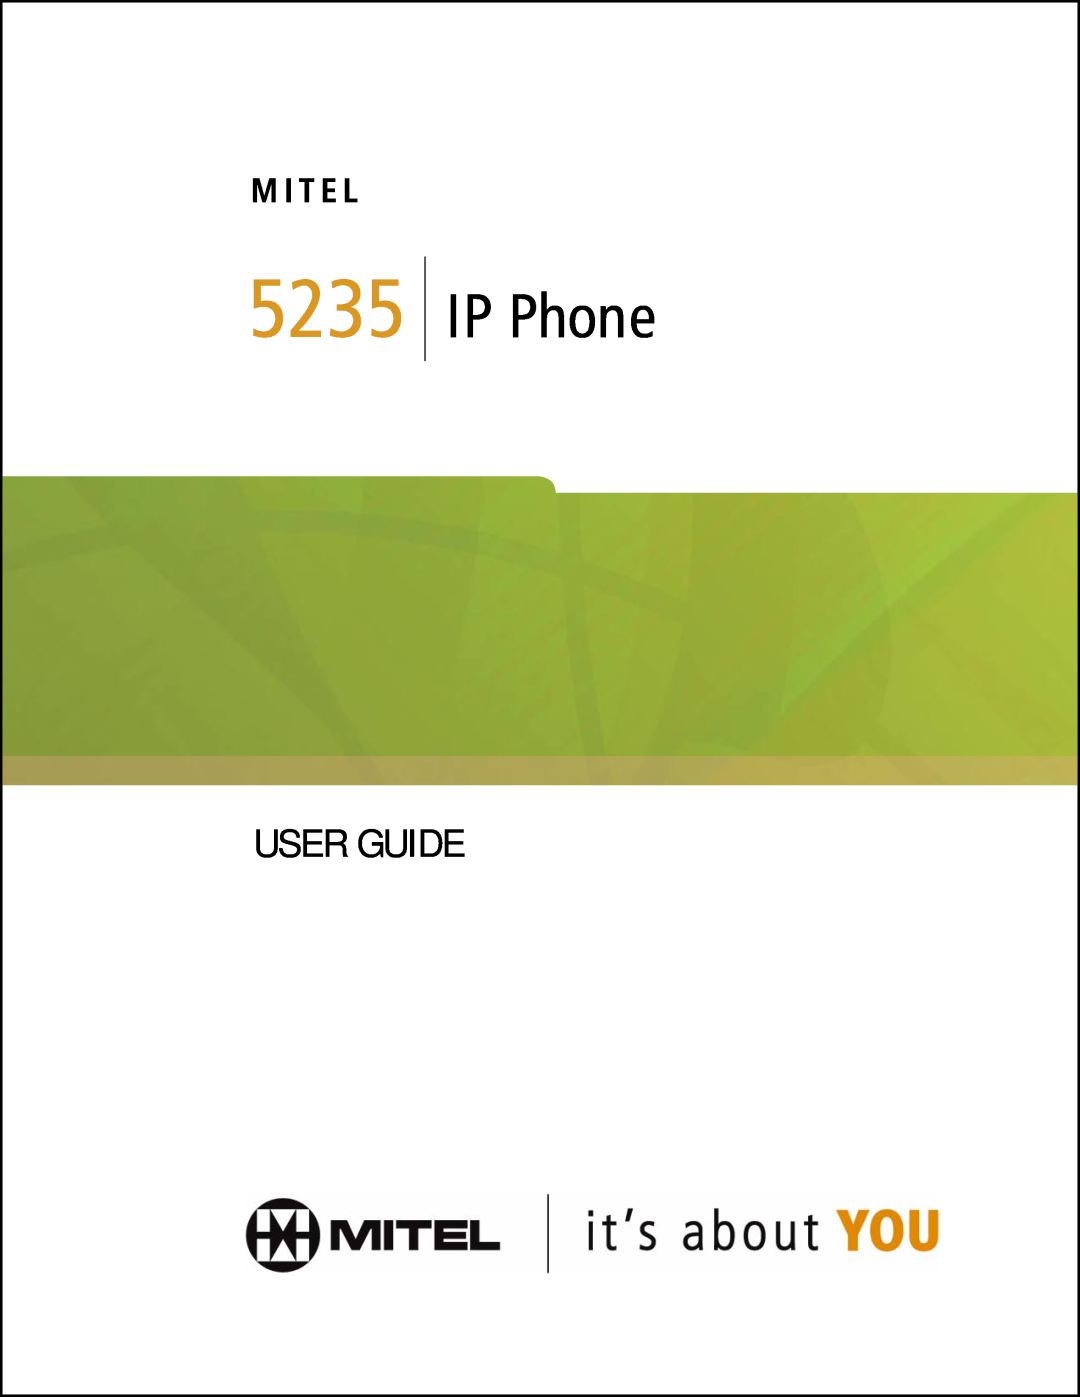 Mitel 5235 manual IP Phone, User Guide, M I T E L 